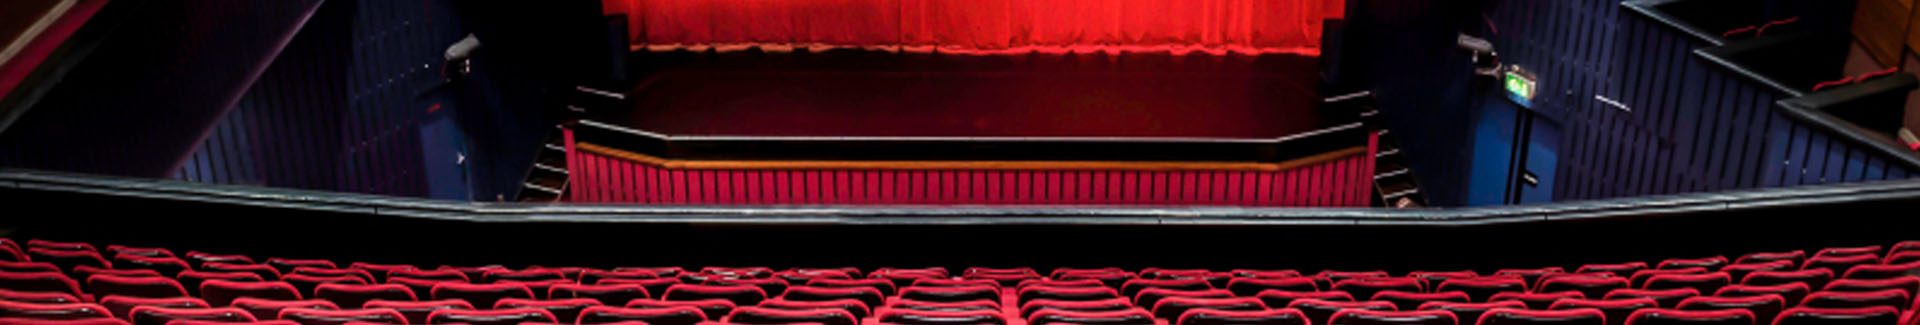 escenario y sillas de un teatro